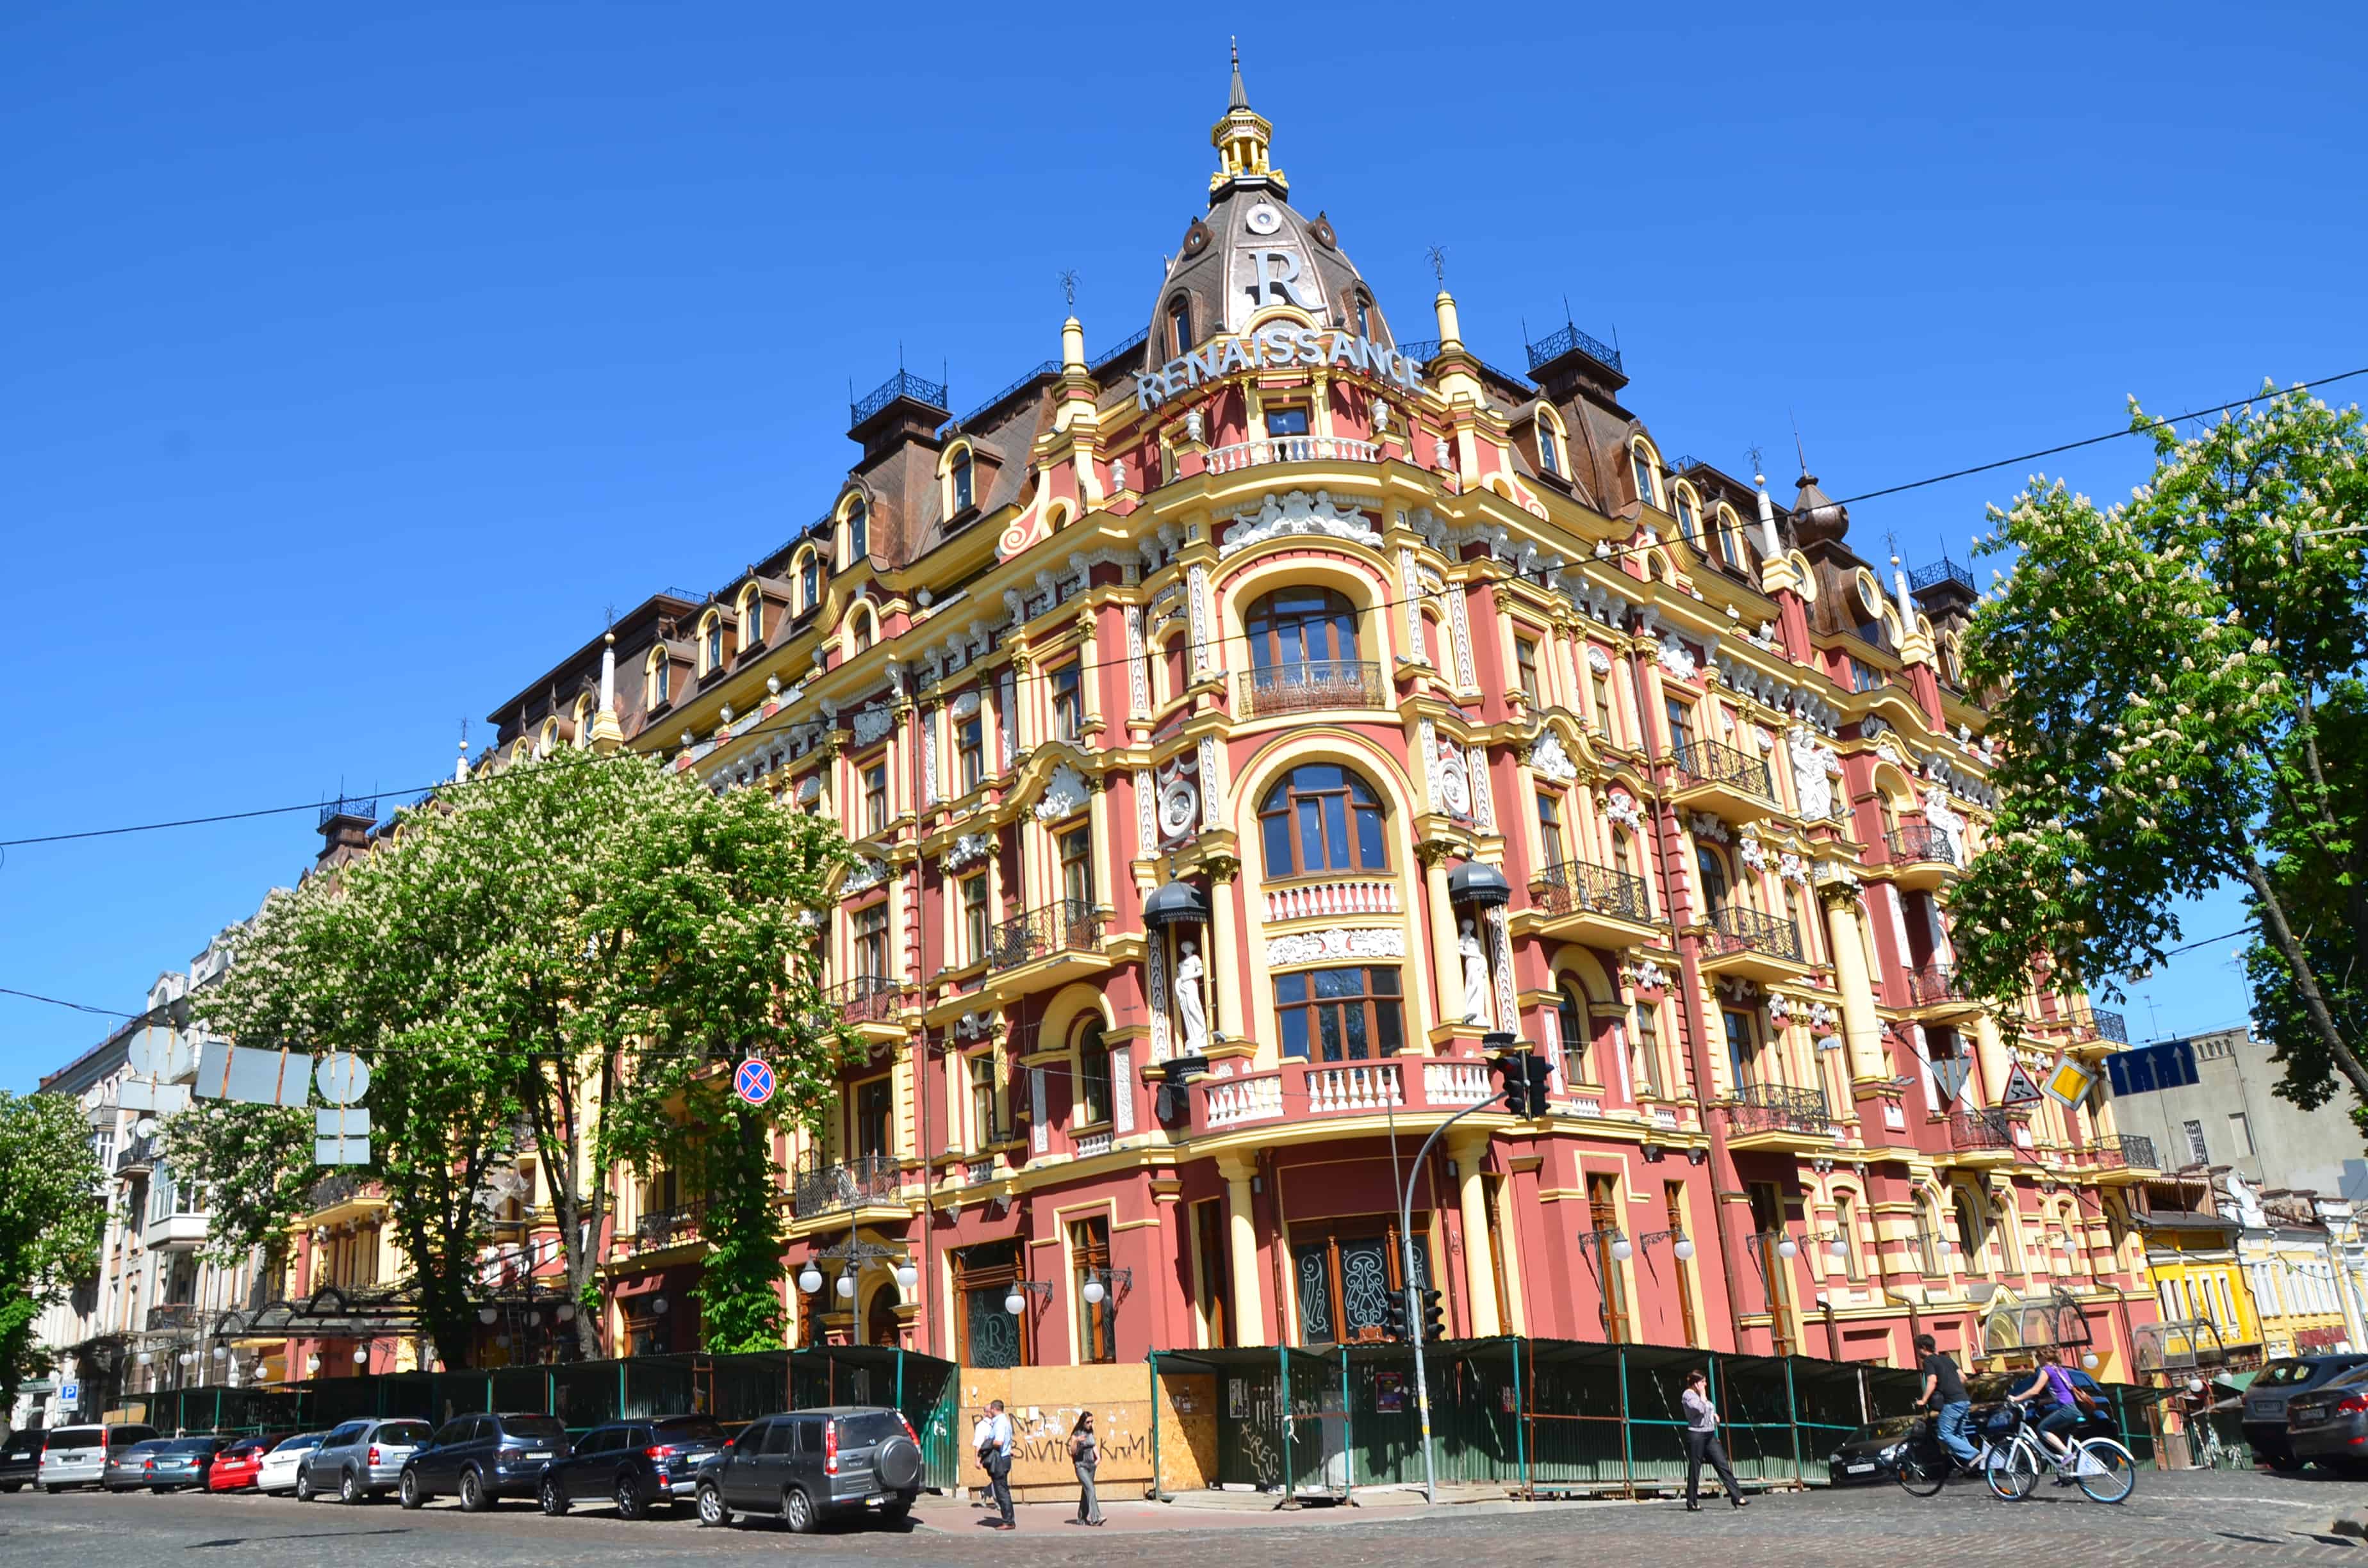 Renaissance Hotel in Kyiv, Ukraine